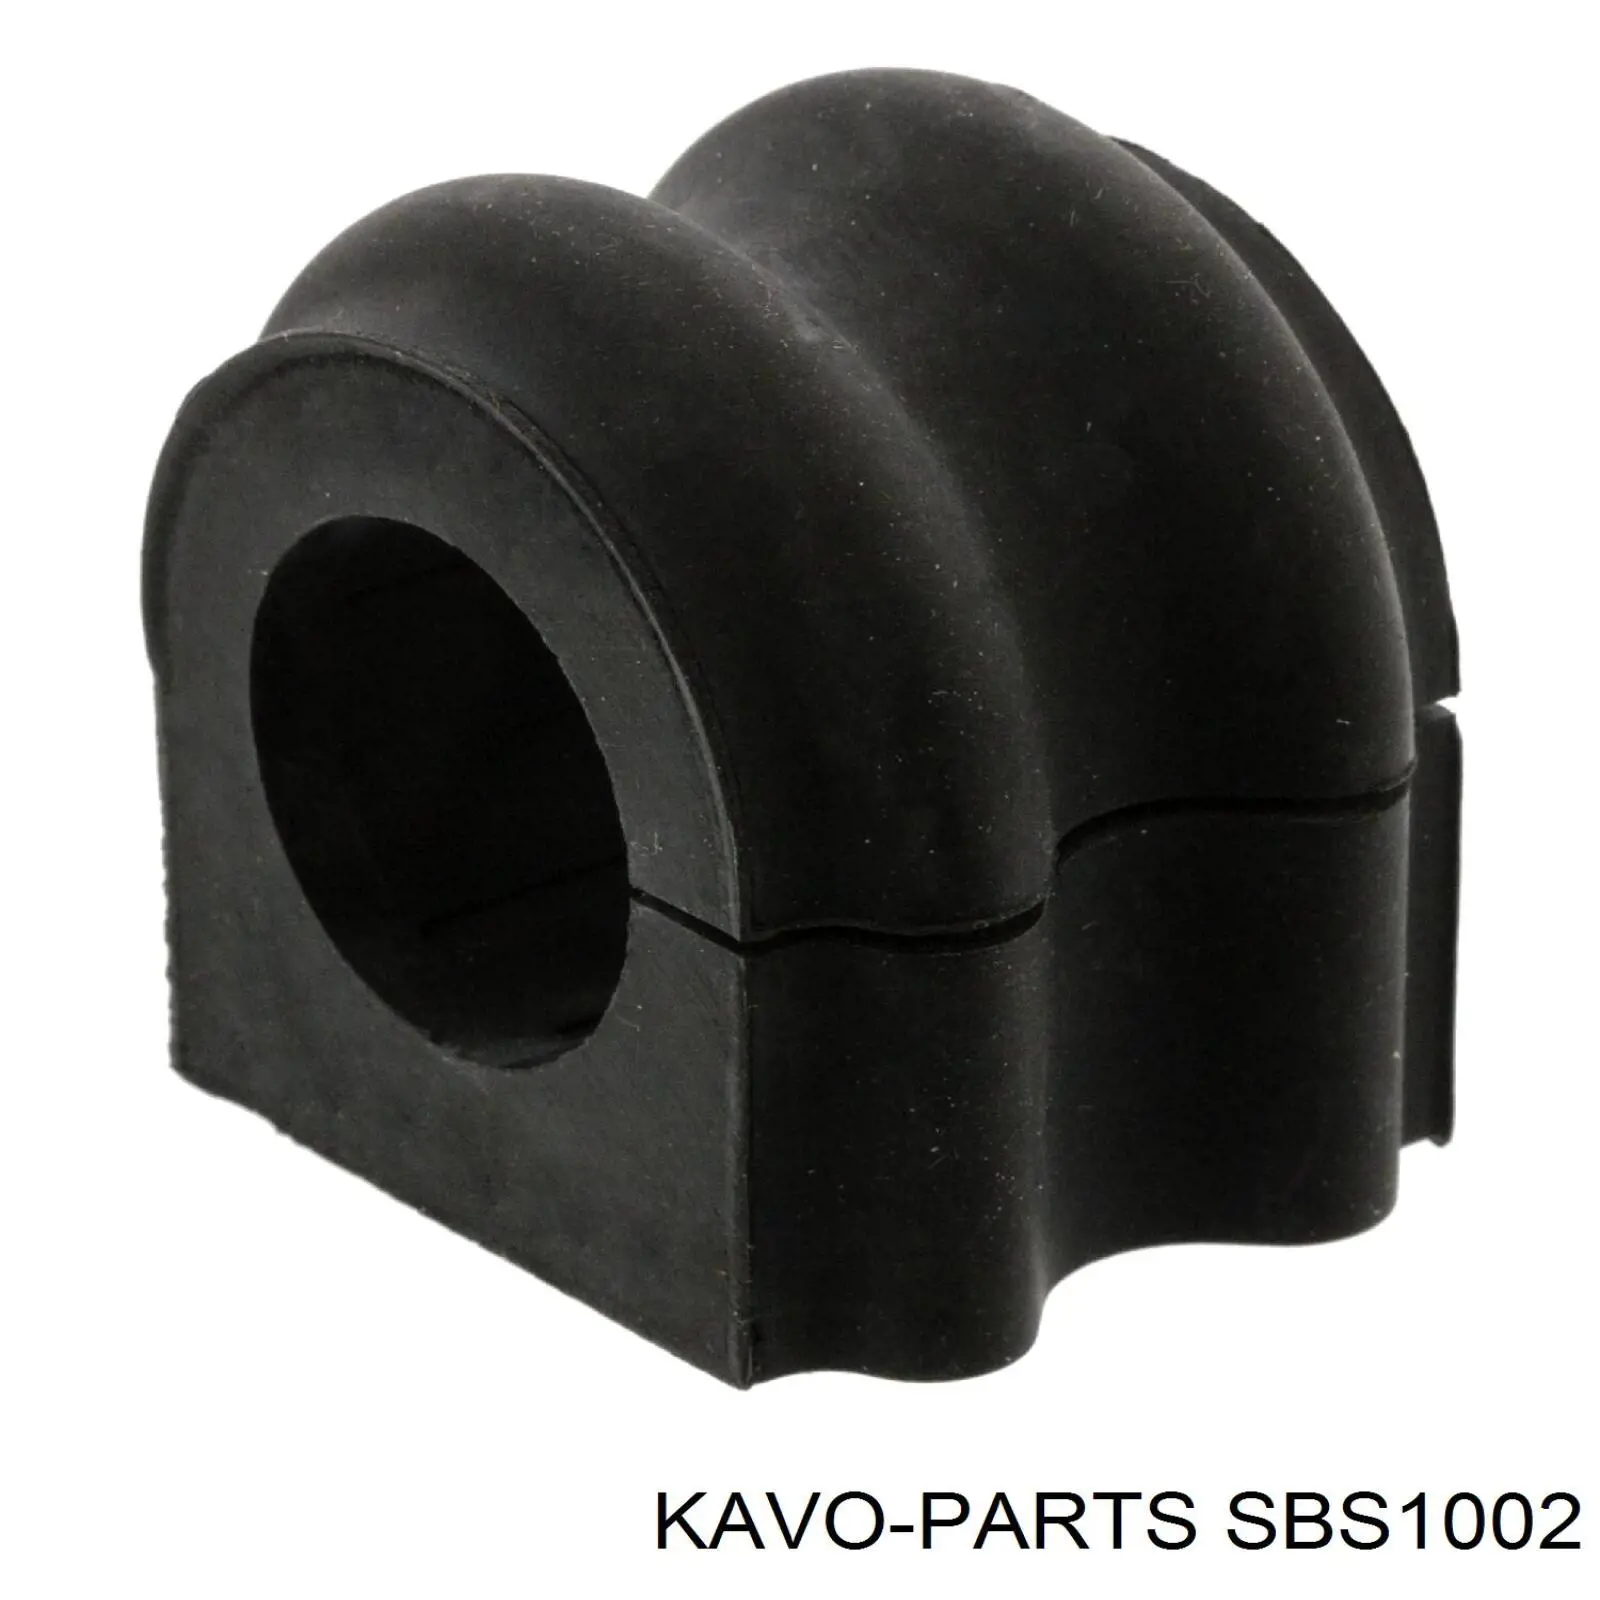 SBS-1002 Kavo Parts casquillo de barra estabilizadora delantera